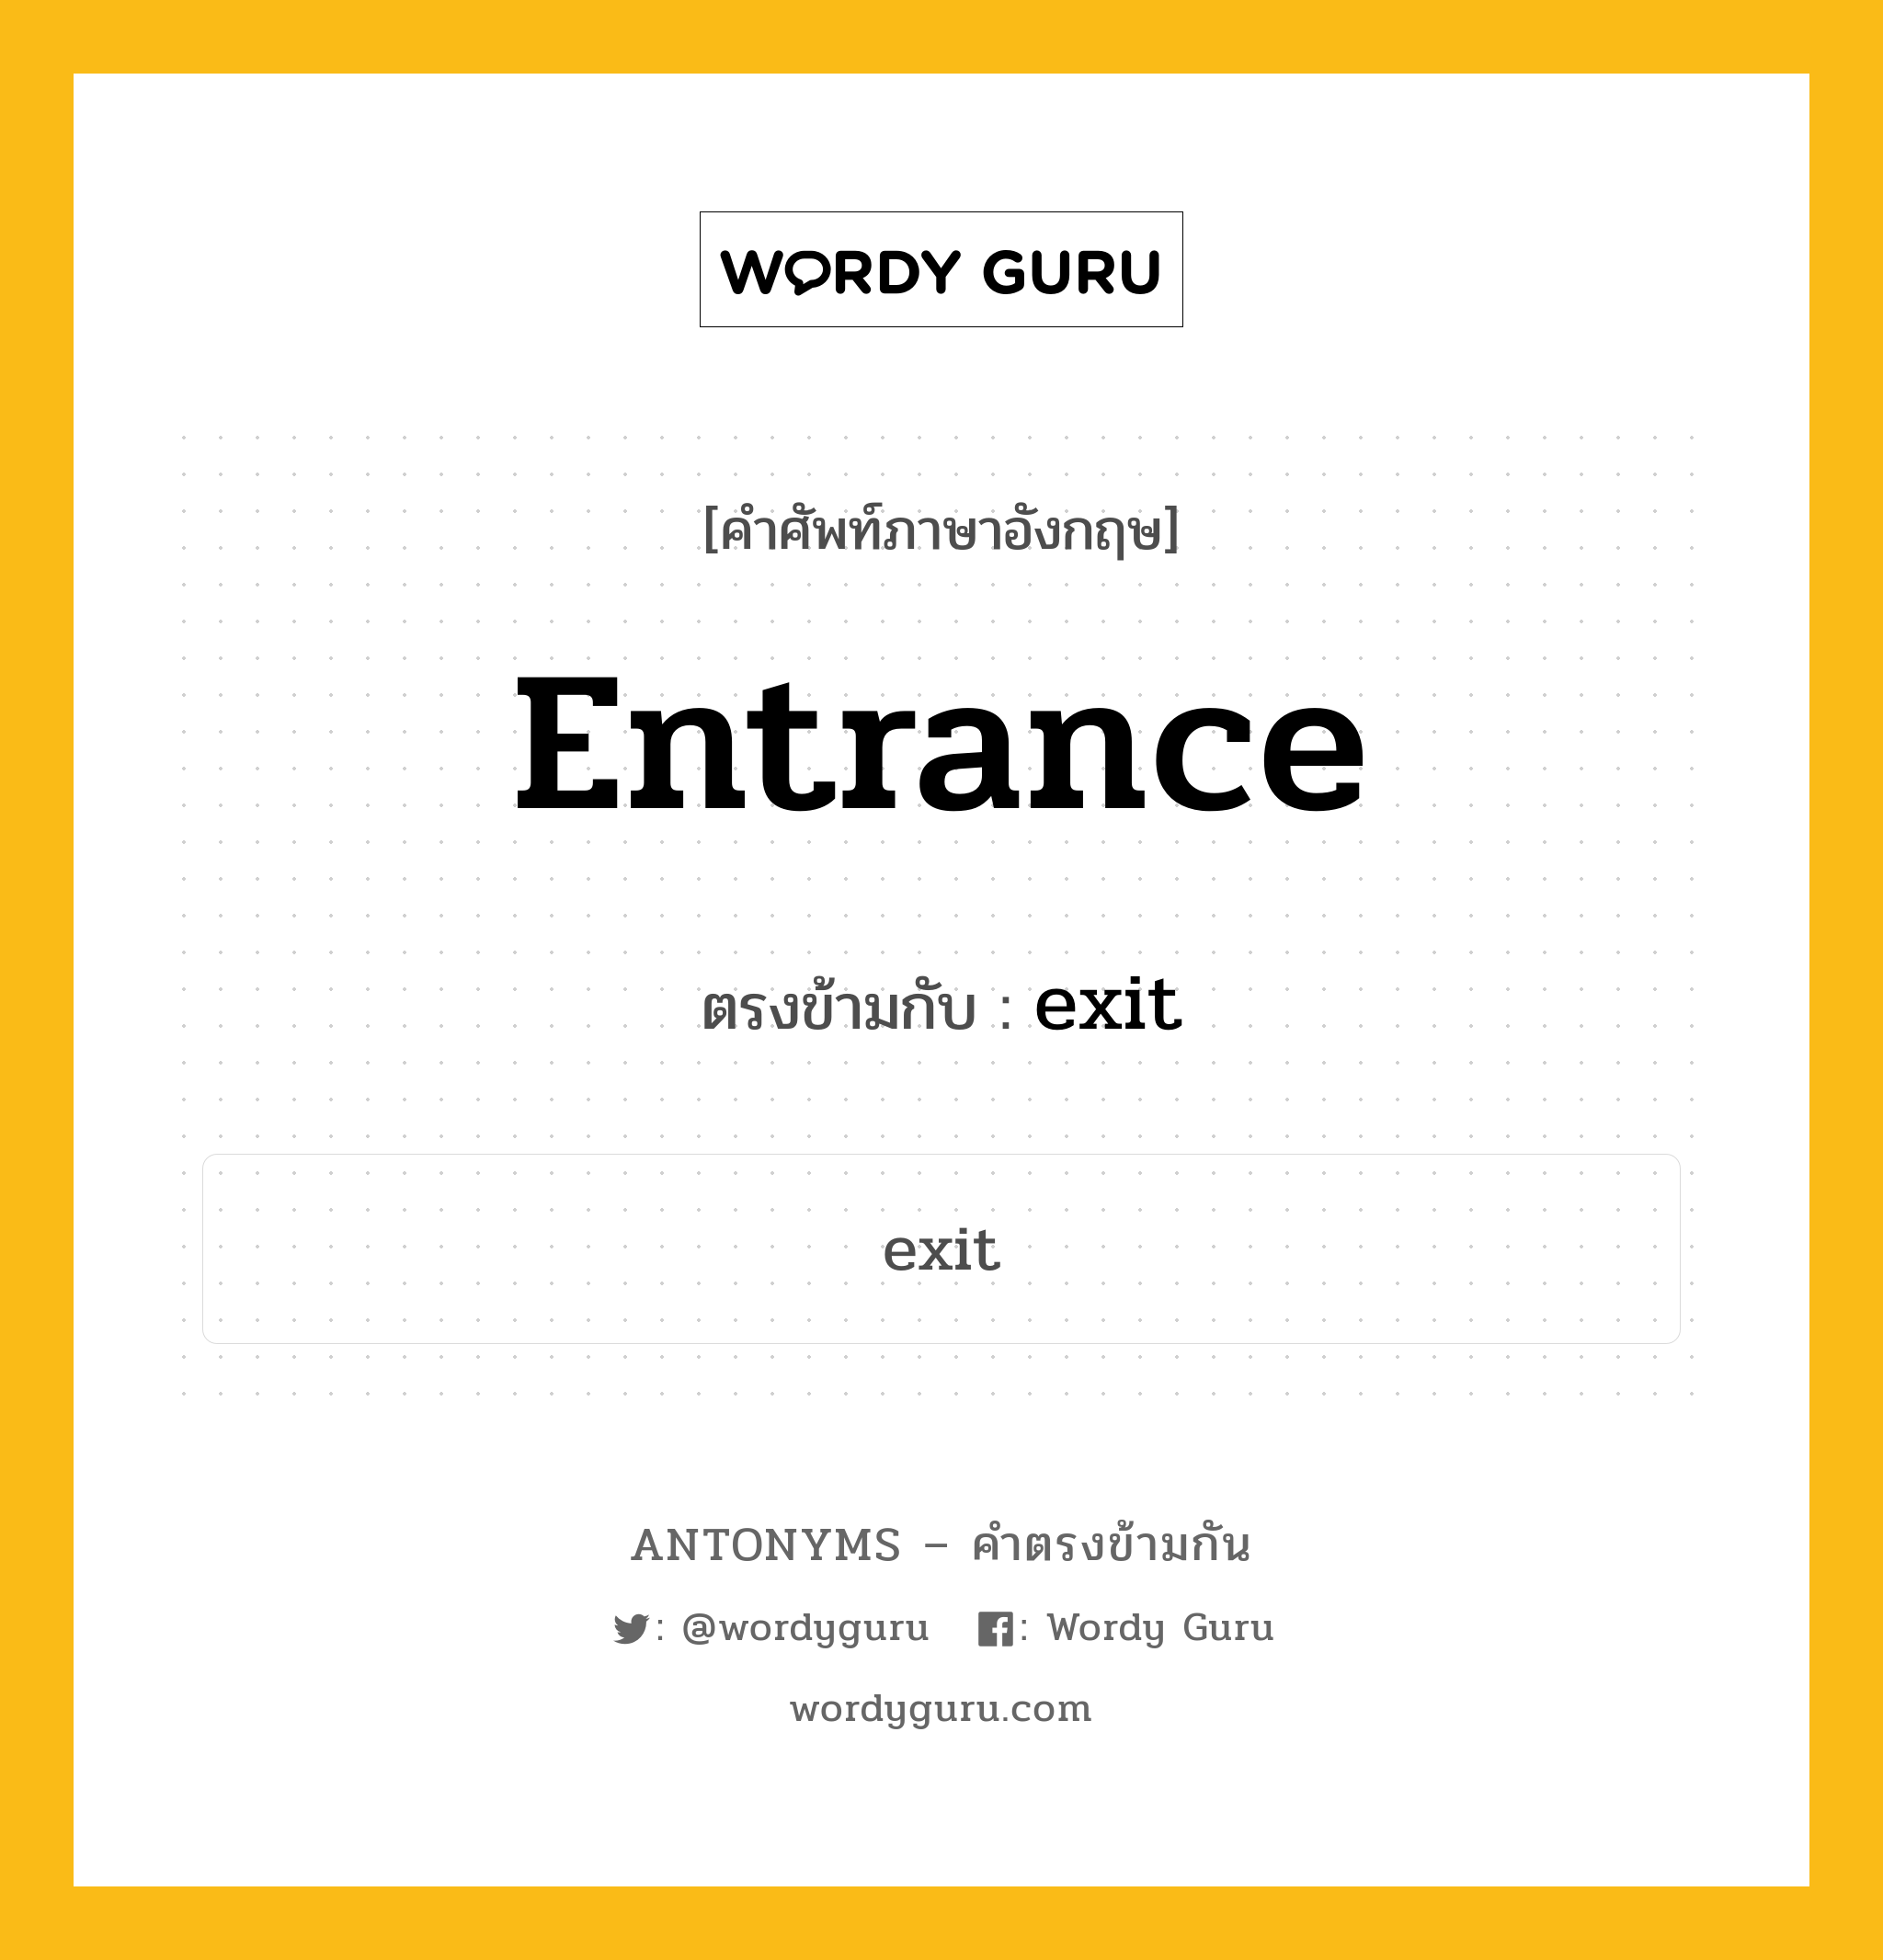 entrance เป็นคำตรงข้ามกับคำไหนบ้าง?, คำศัพท์ภาษาอังกฤษ entrance ตรงข้ามกับ exit หมวด exit